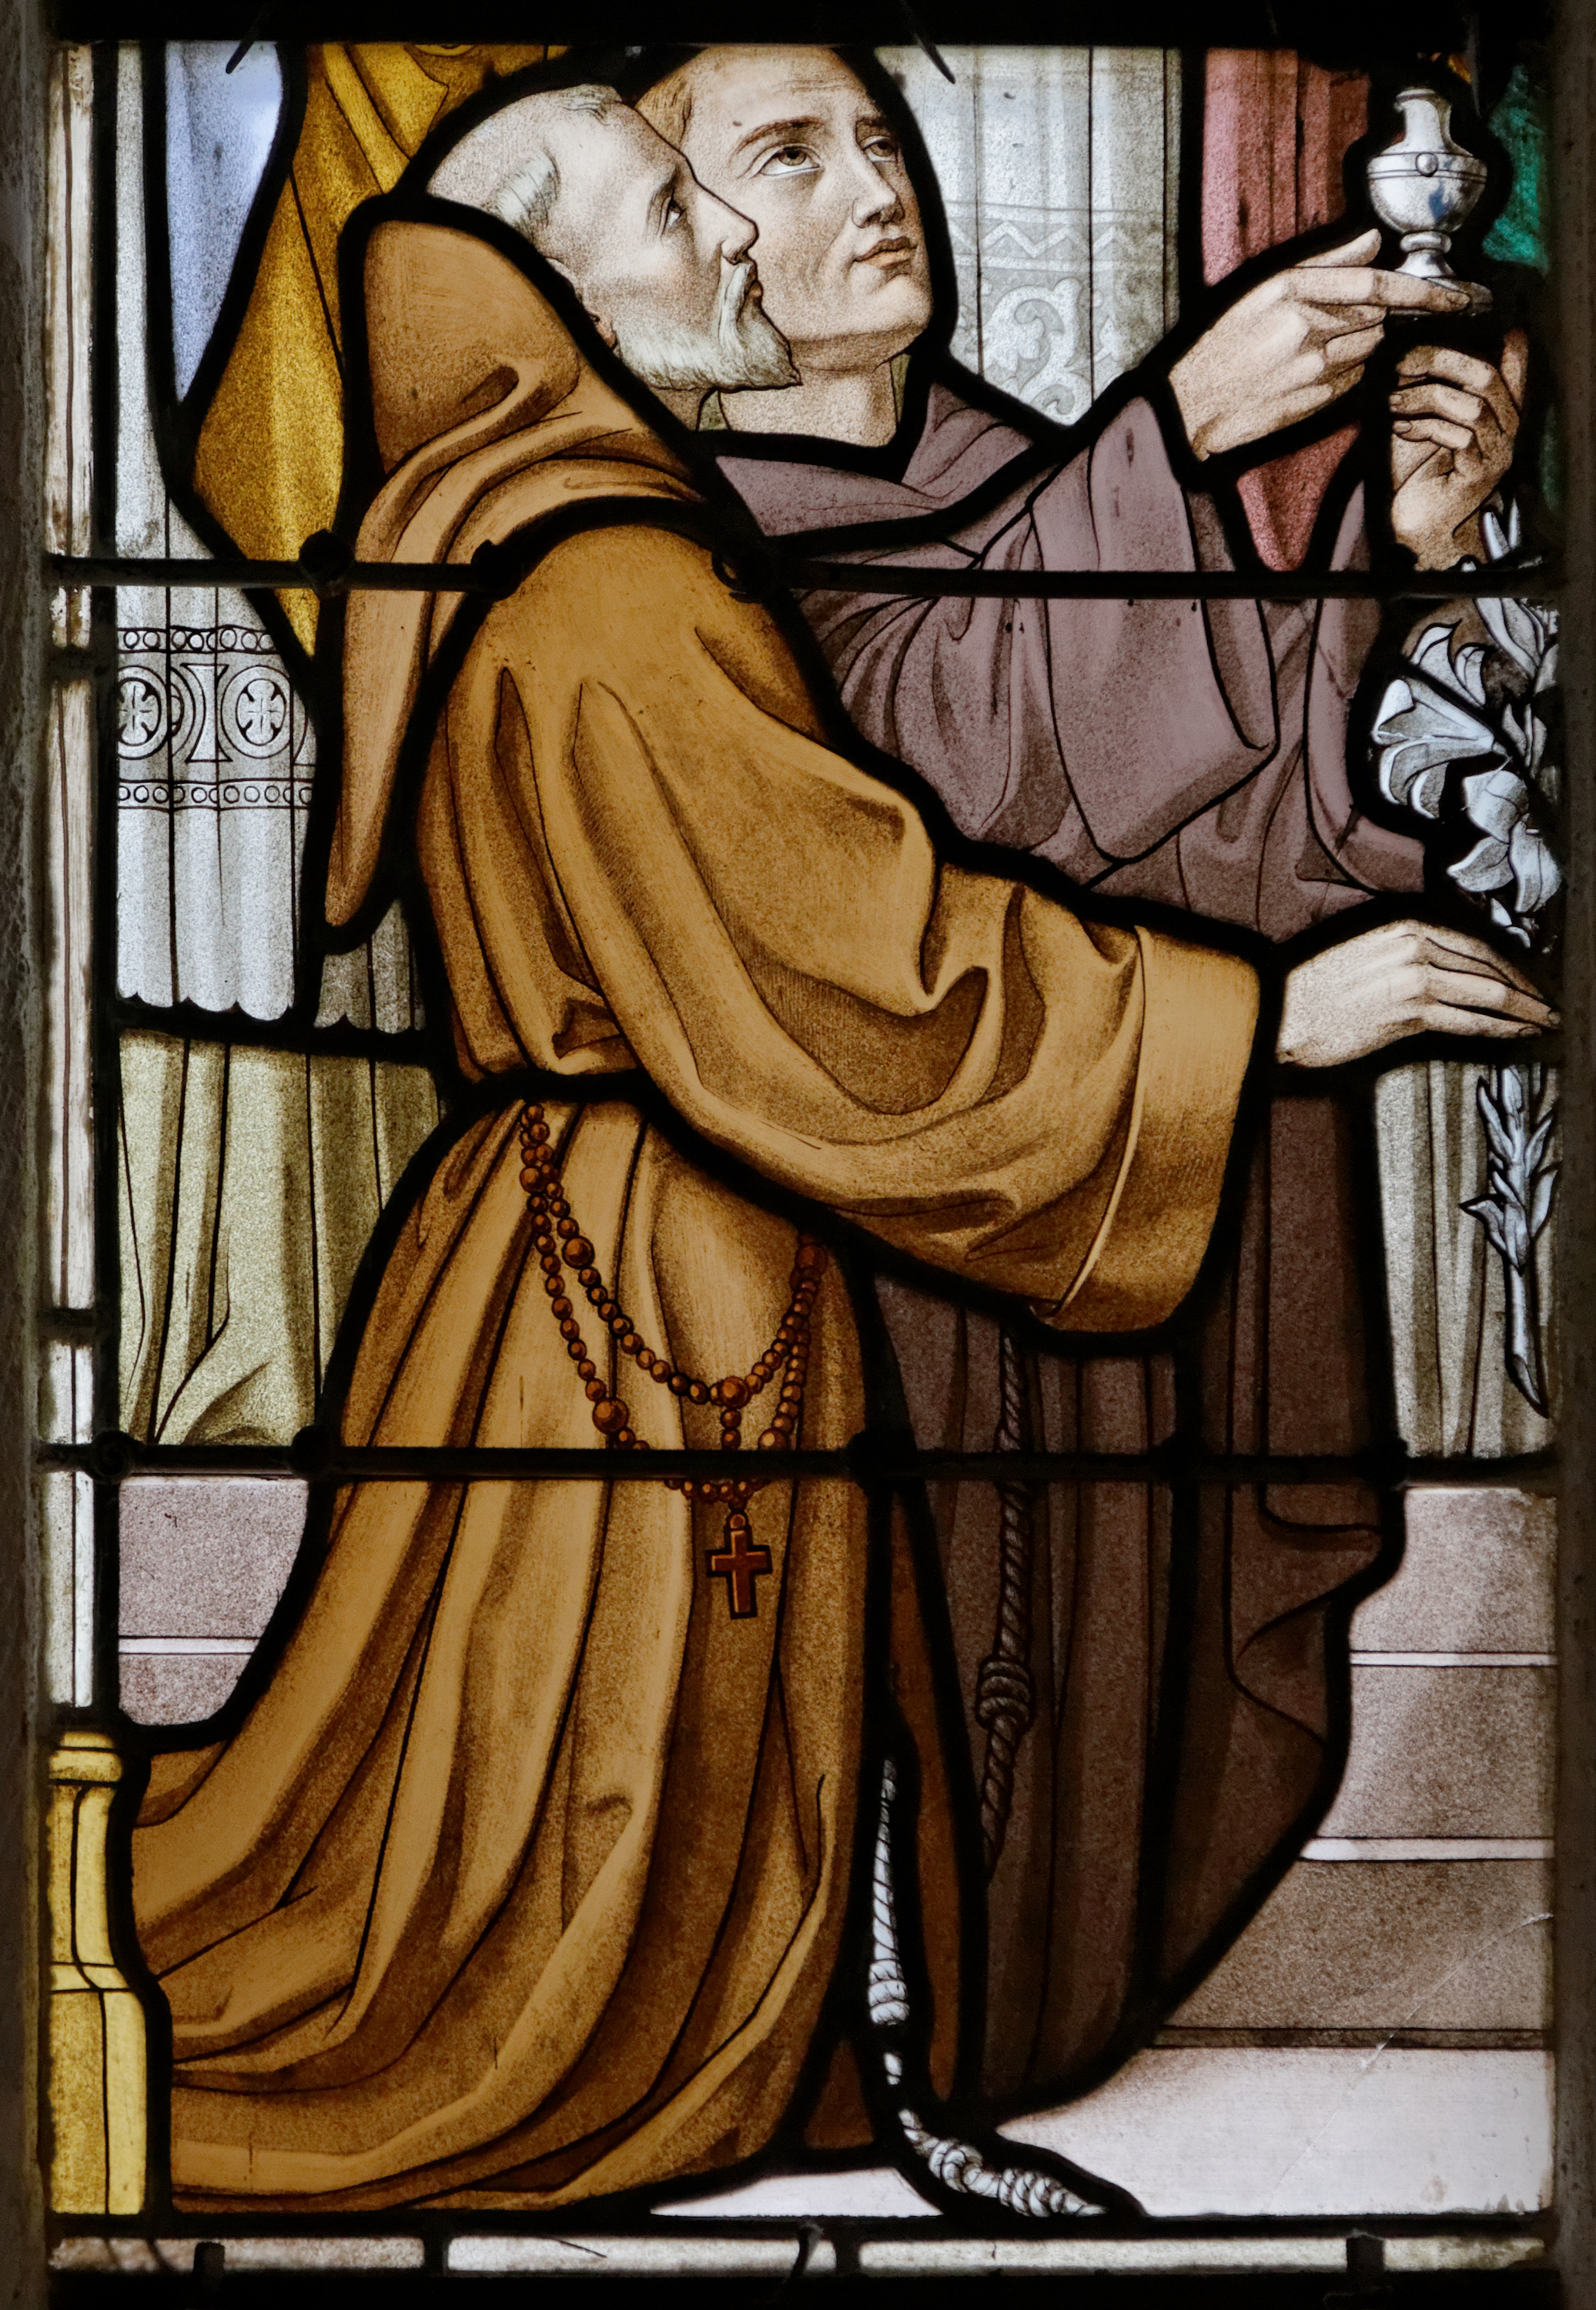 medieval monk praying